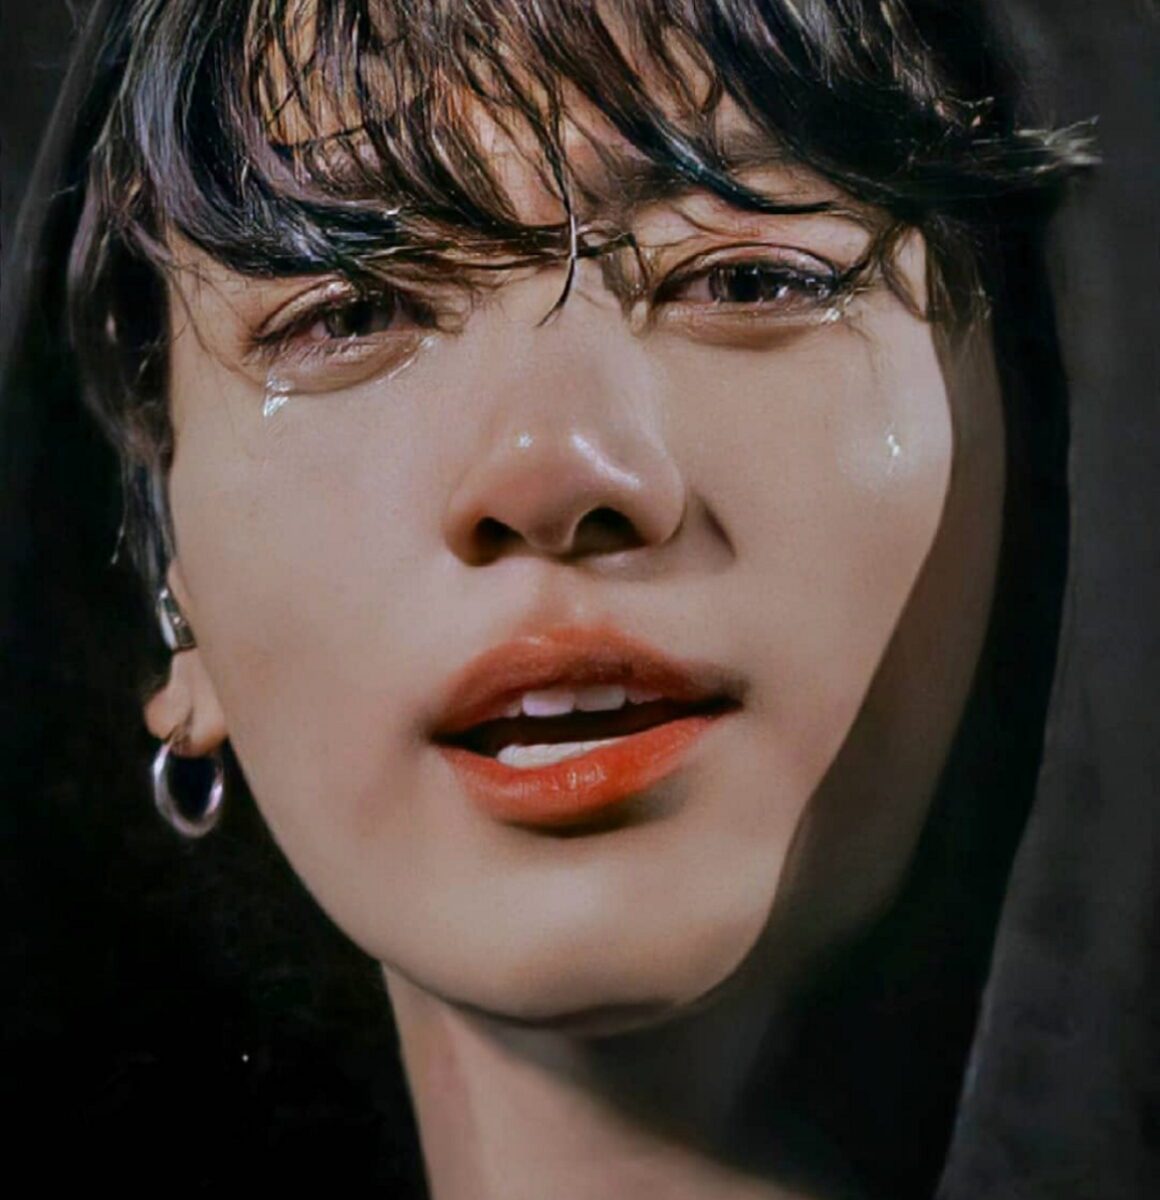 jungkook crying